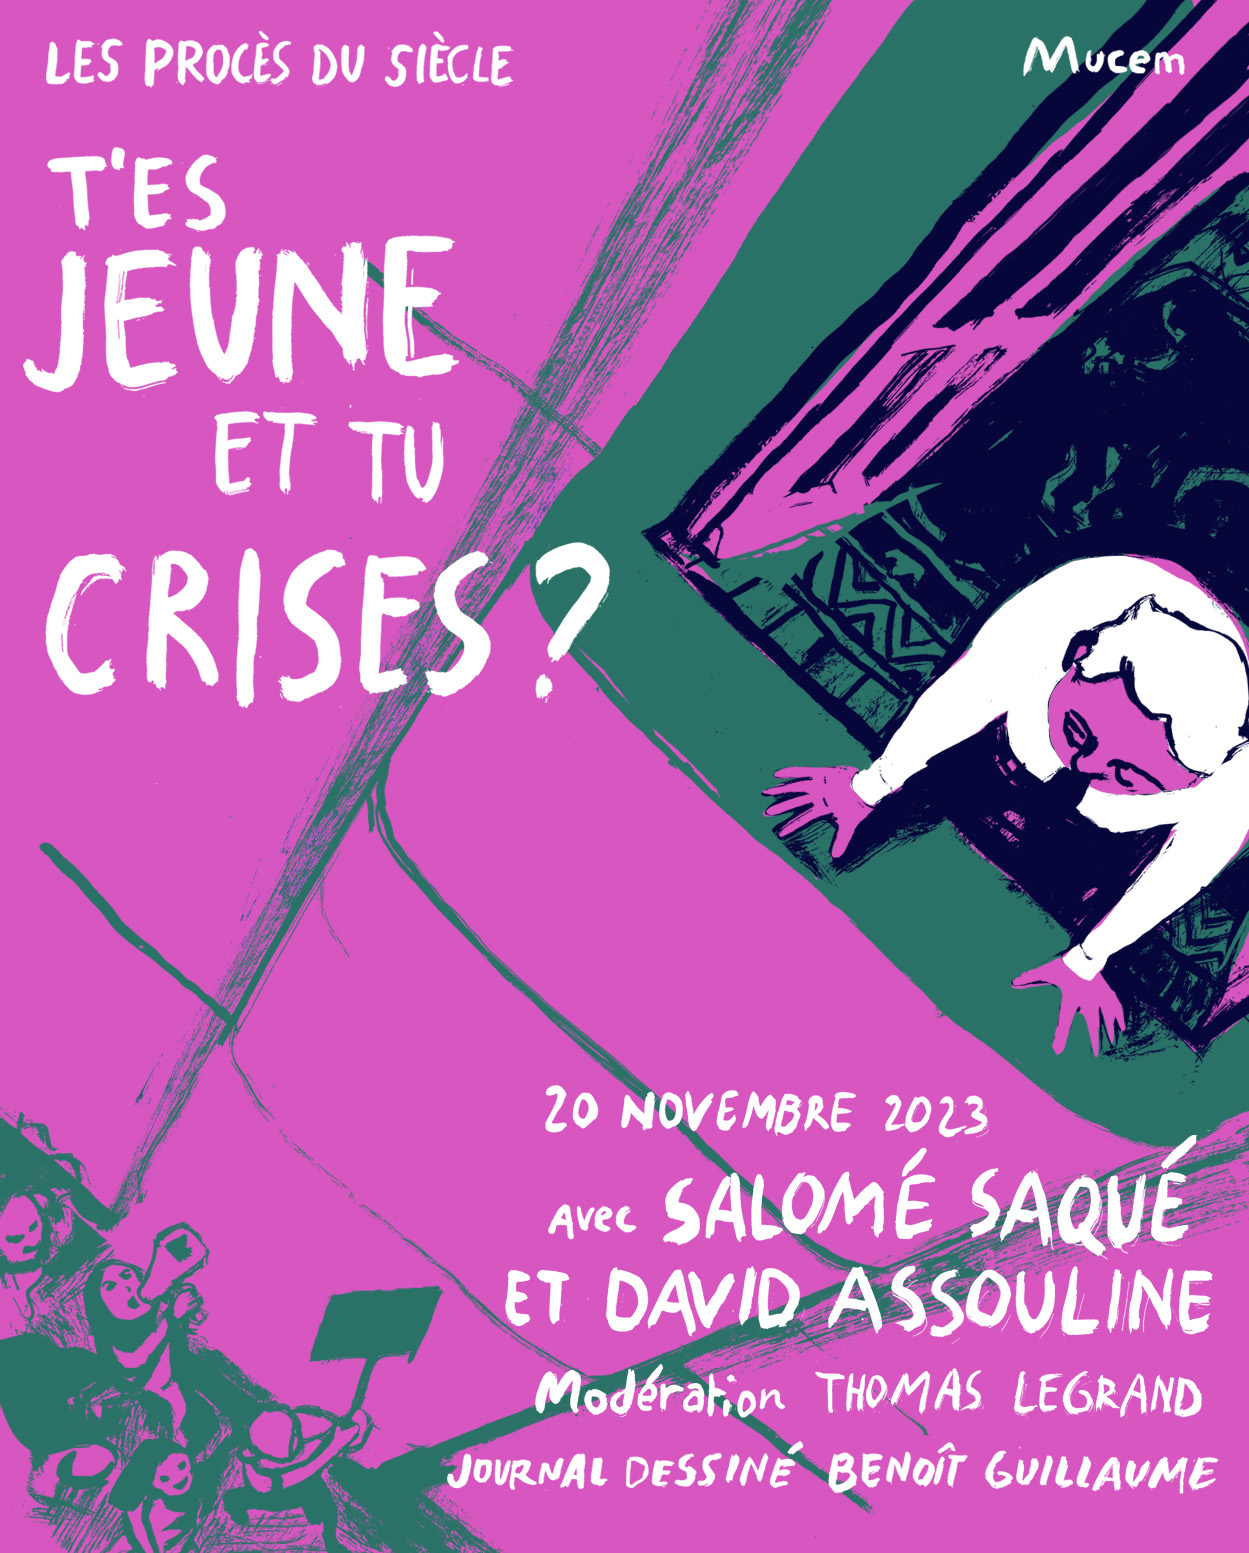 Journal dessiné "Le Procès du siècle" du 20 novembre 2023, par Benoit Guillaume